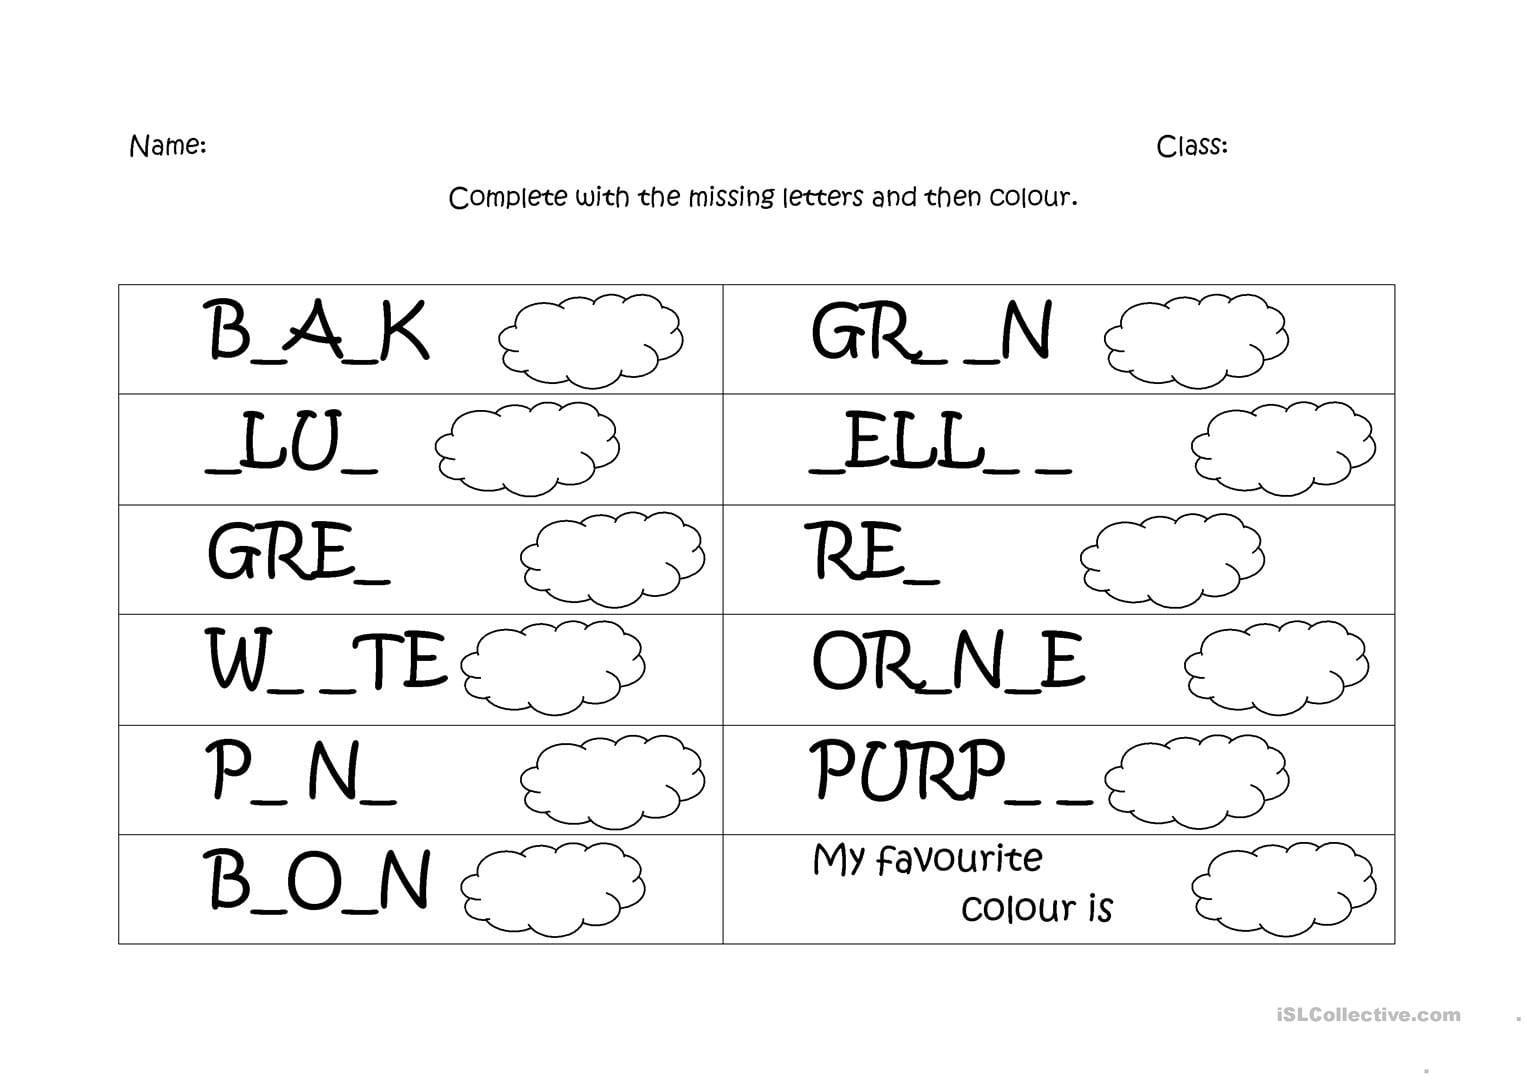 Colours Spelling Worksheet  Free Esl Printable Worksheets Made Or Spelling Color Words Worksheet